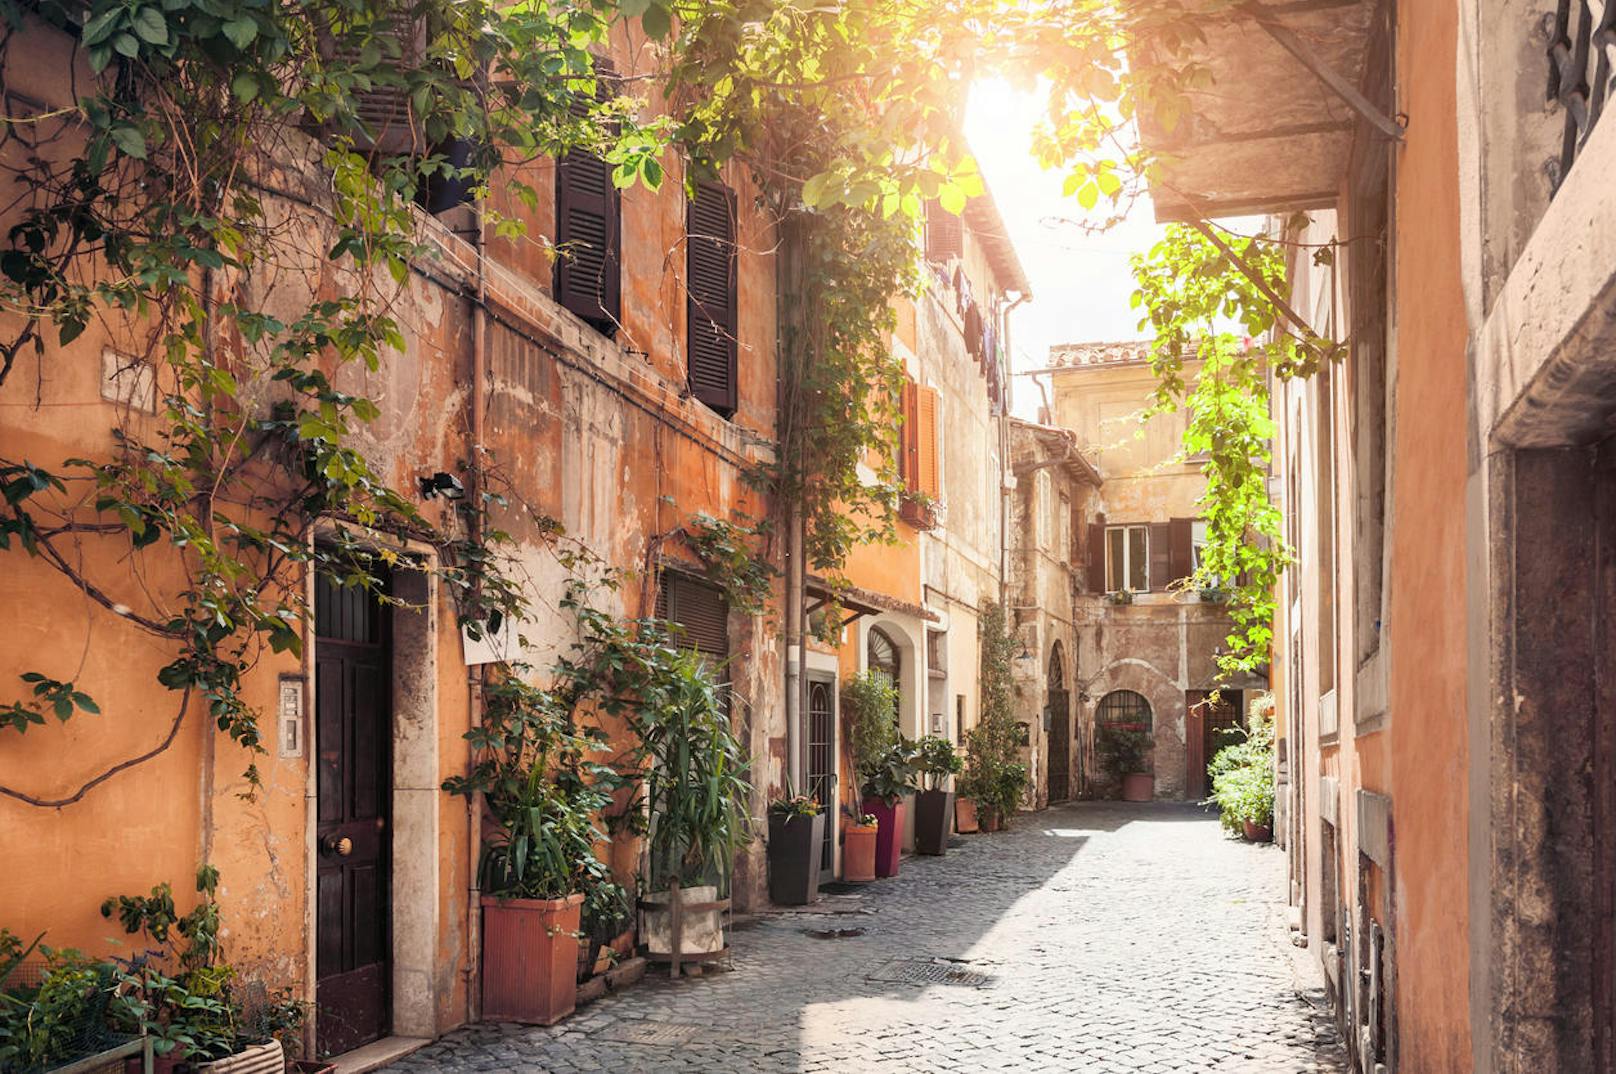 Trastevere - das kleine Viertel am Ufer des Tibers ist ein Viertel Roms, das sehr authentisch ist. Zwischen den engen Gassen kann man ausgezeichnet essen gehen. Von manchen wird Trastevere auch das Dorf in der Stadt genannt. Wer einmal das echte Rom kennenlernen will, sollte einen Abstecher nach Trastevere machen!